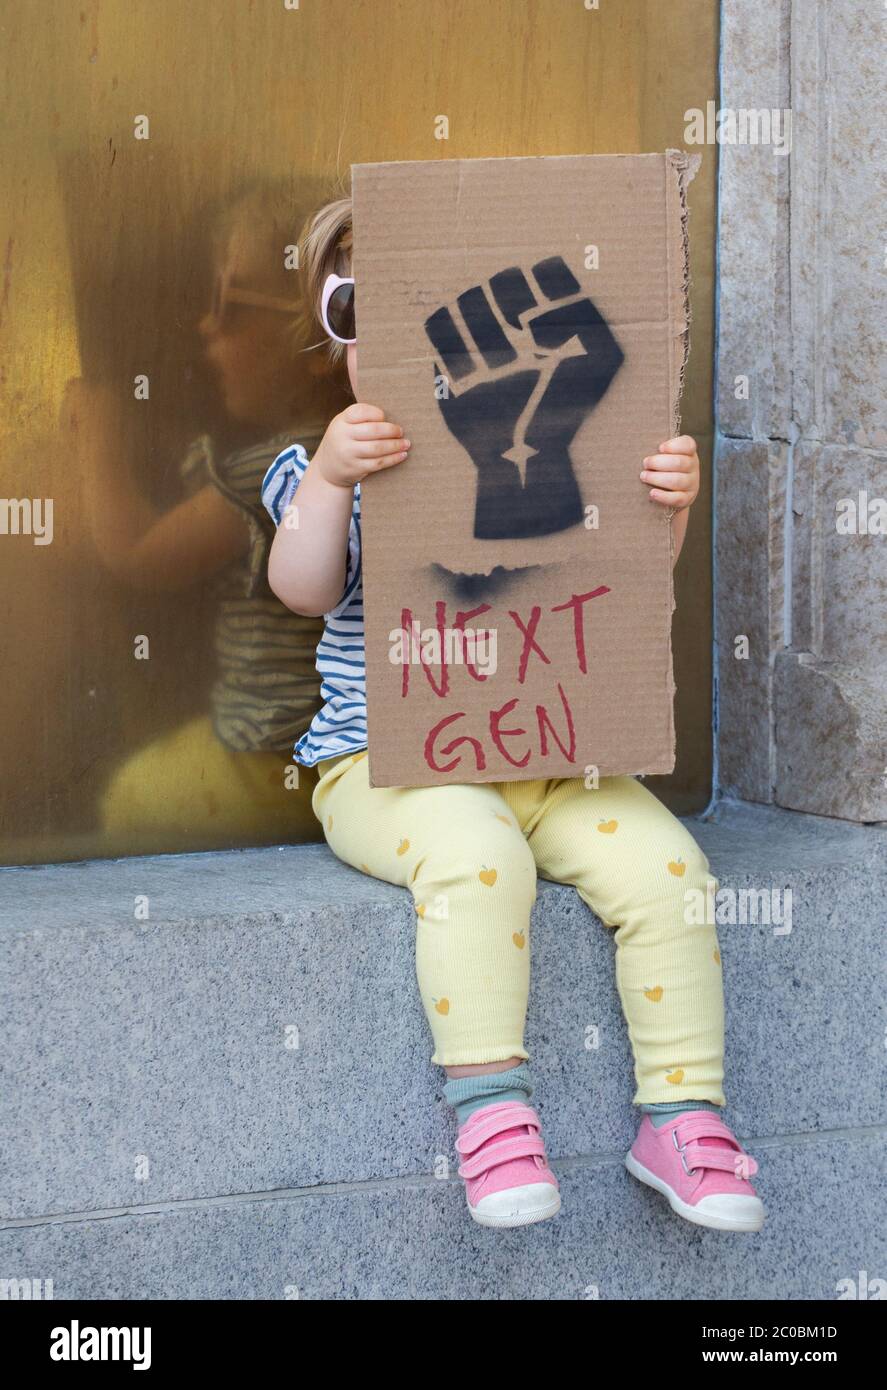 Ein junges weißes Kleinkind versteckt sich hinter ihrem Schild, das ein Bild einer schwarzen Faust zeigt, die die Materie der Schwarzen Leben zusammen mit den Worten "Next-Gen" während eines Protestes am 7. Juni 2020 in Hollywood Kalifornien symbolisiert. Stockfoto